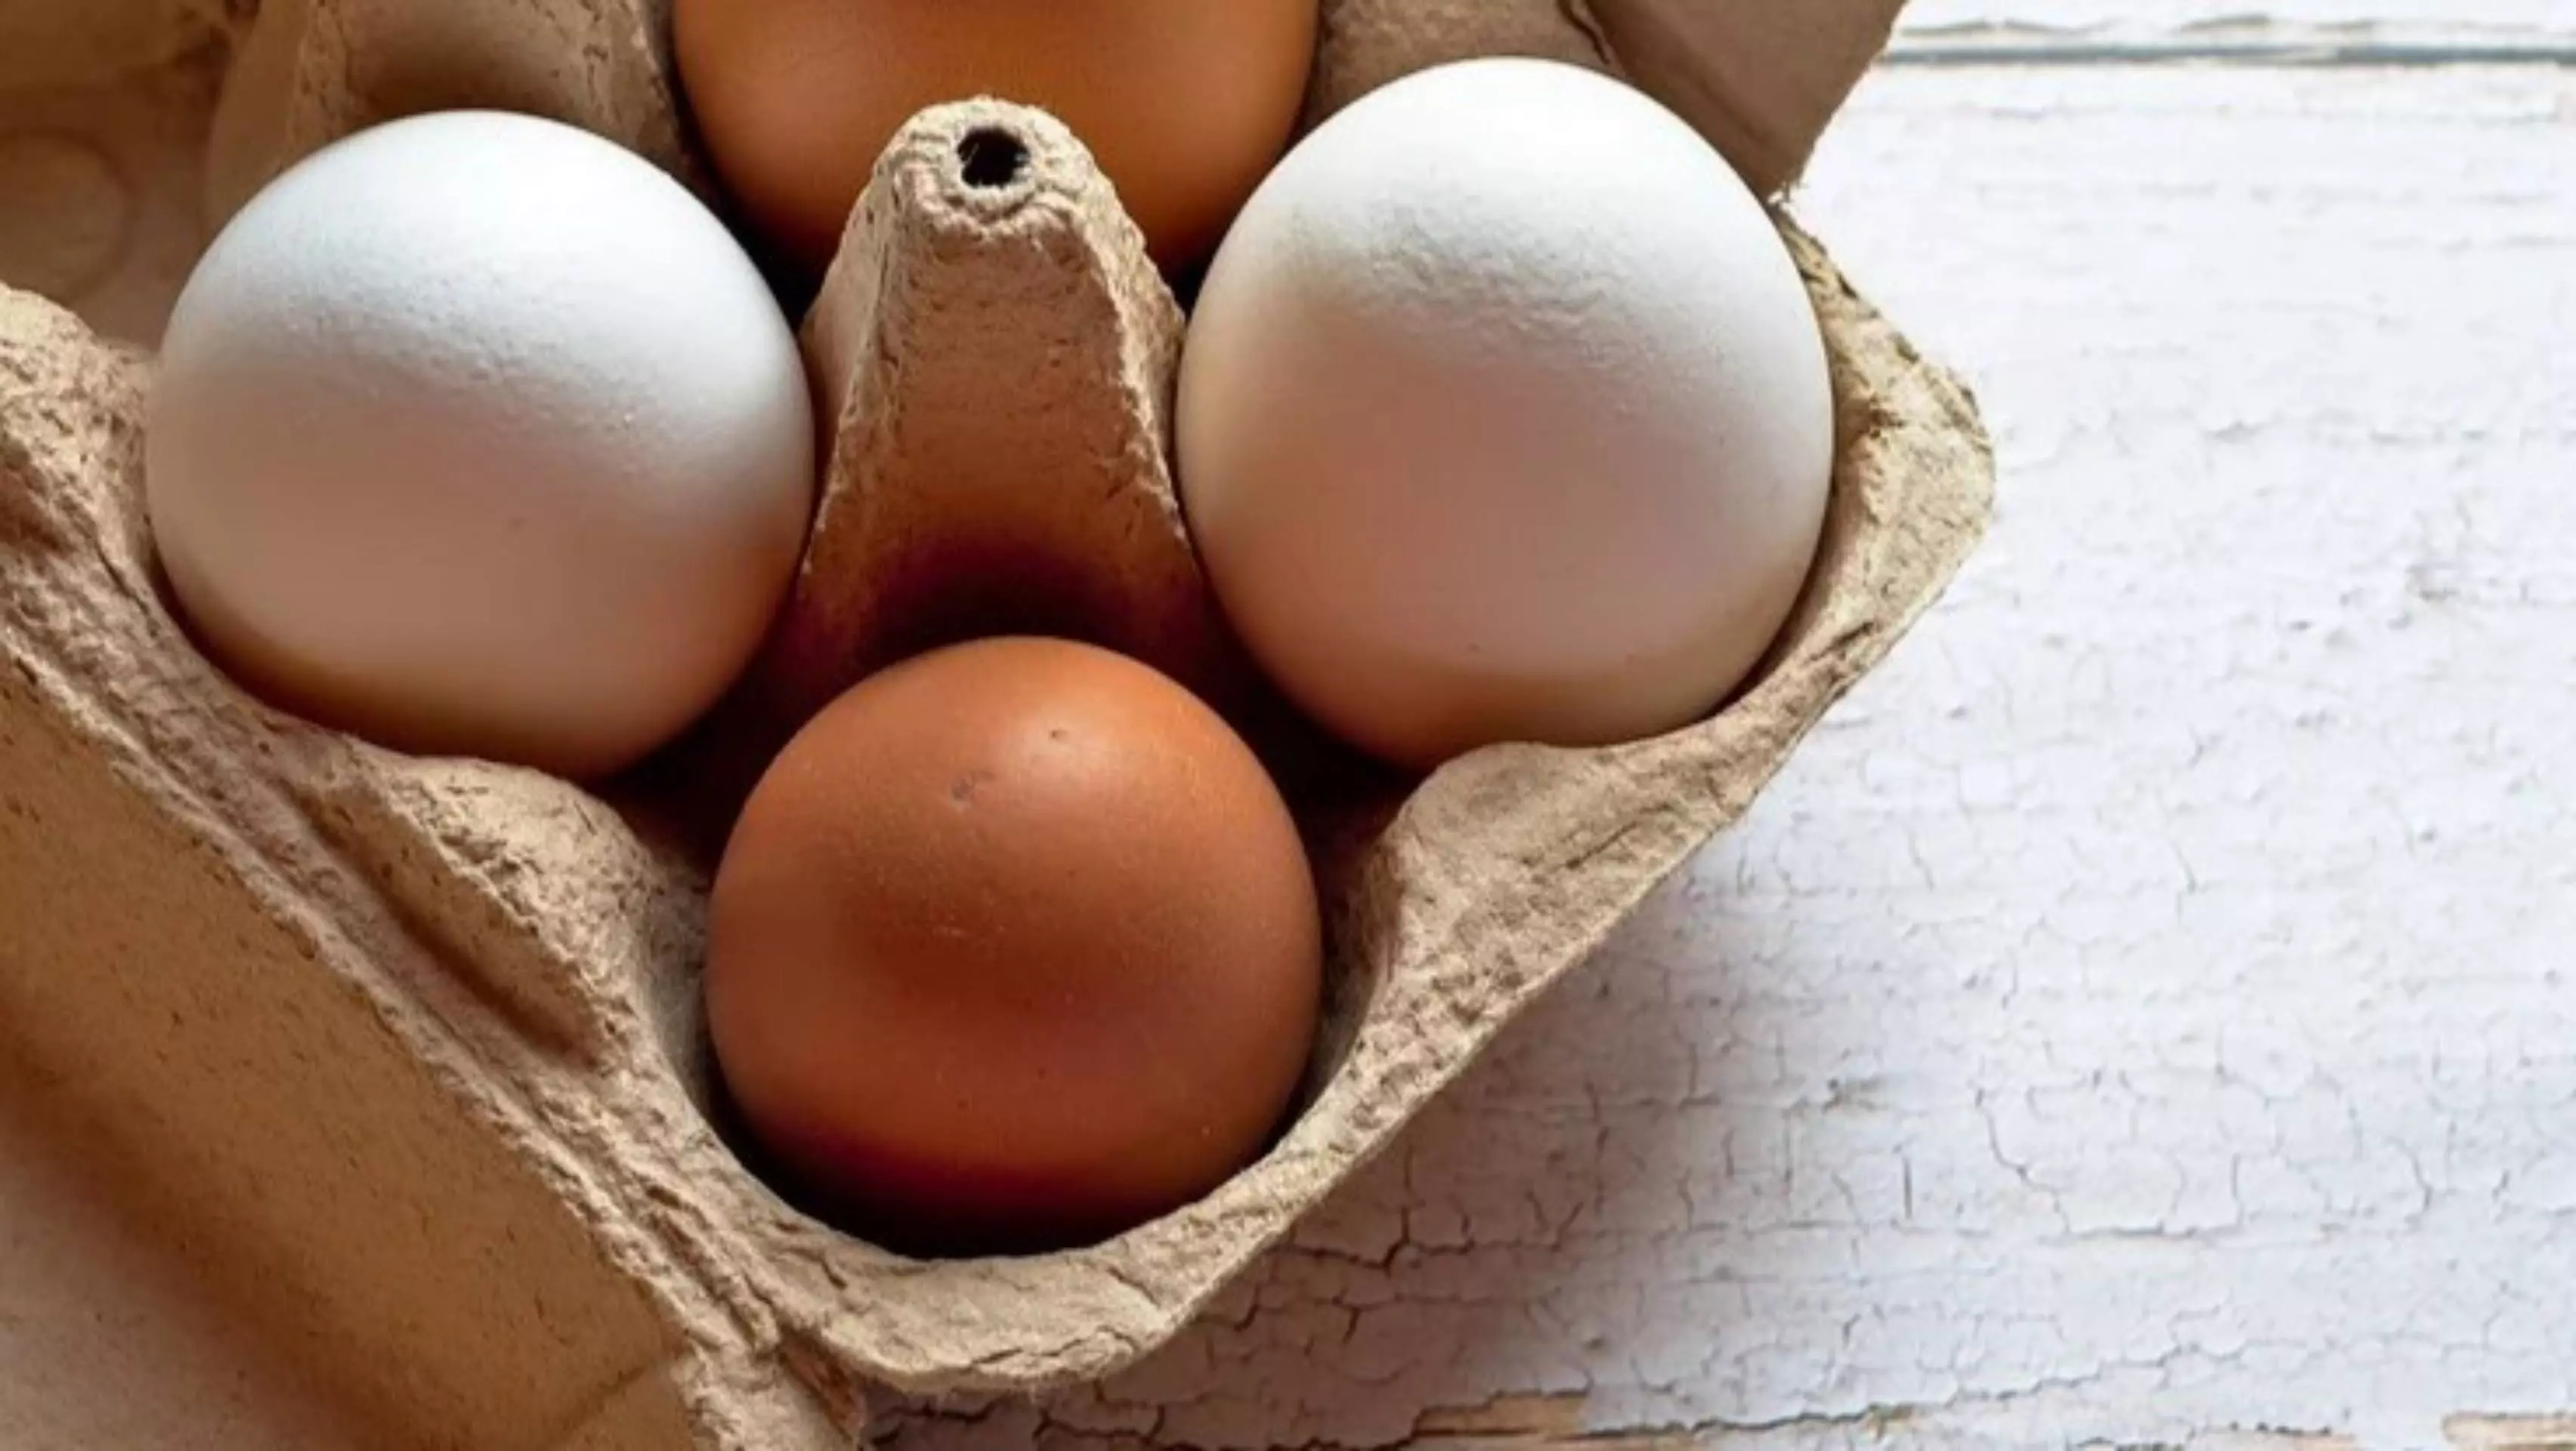 7 съвета, които можете да следвате, за да запазите яйцата си свежи дълго време